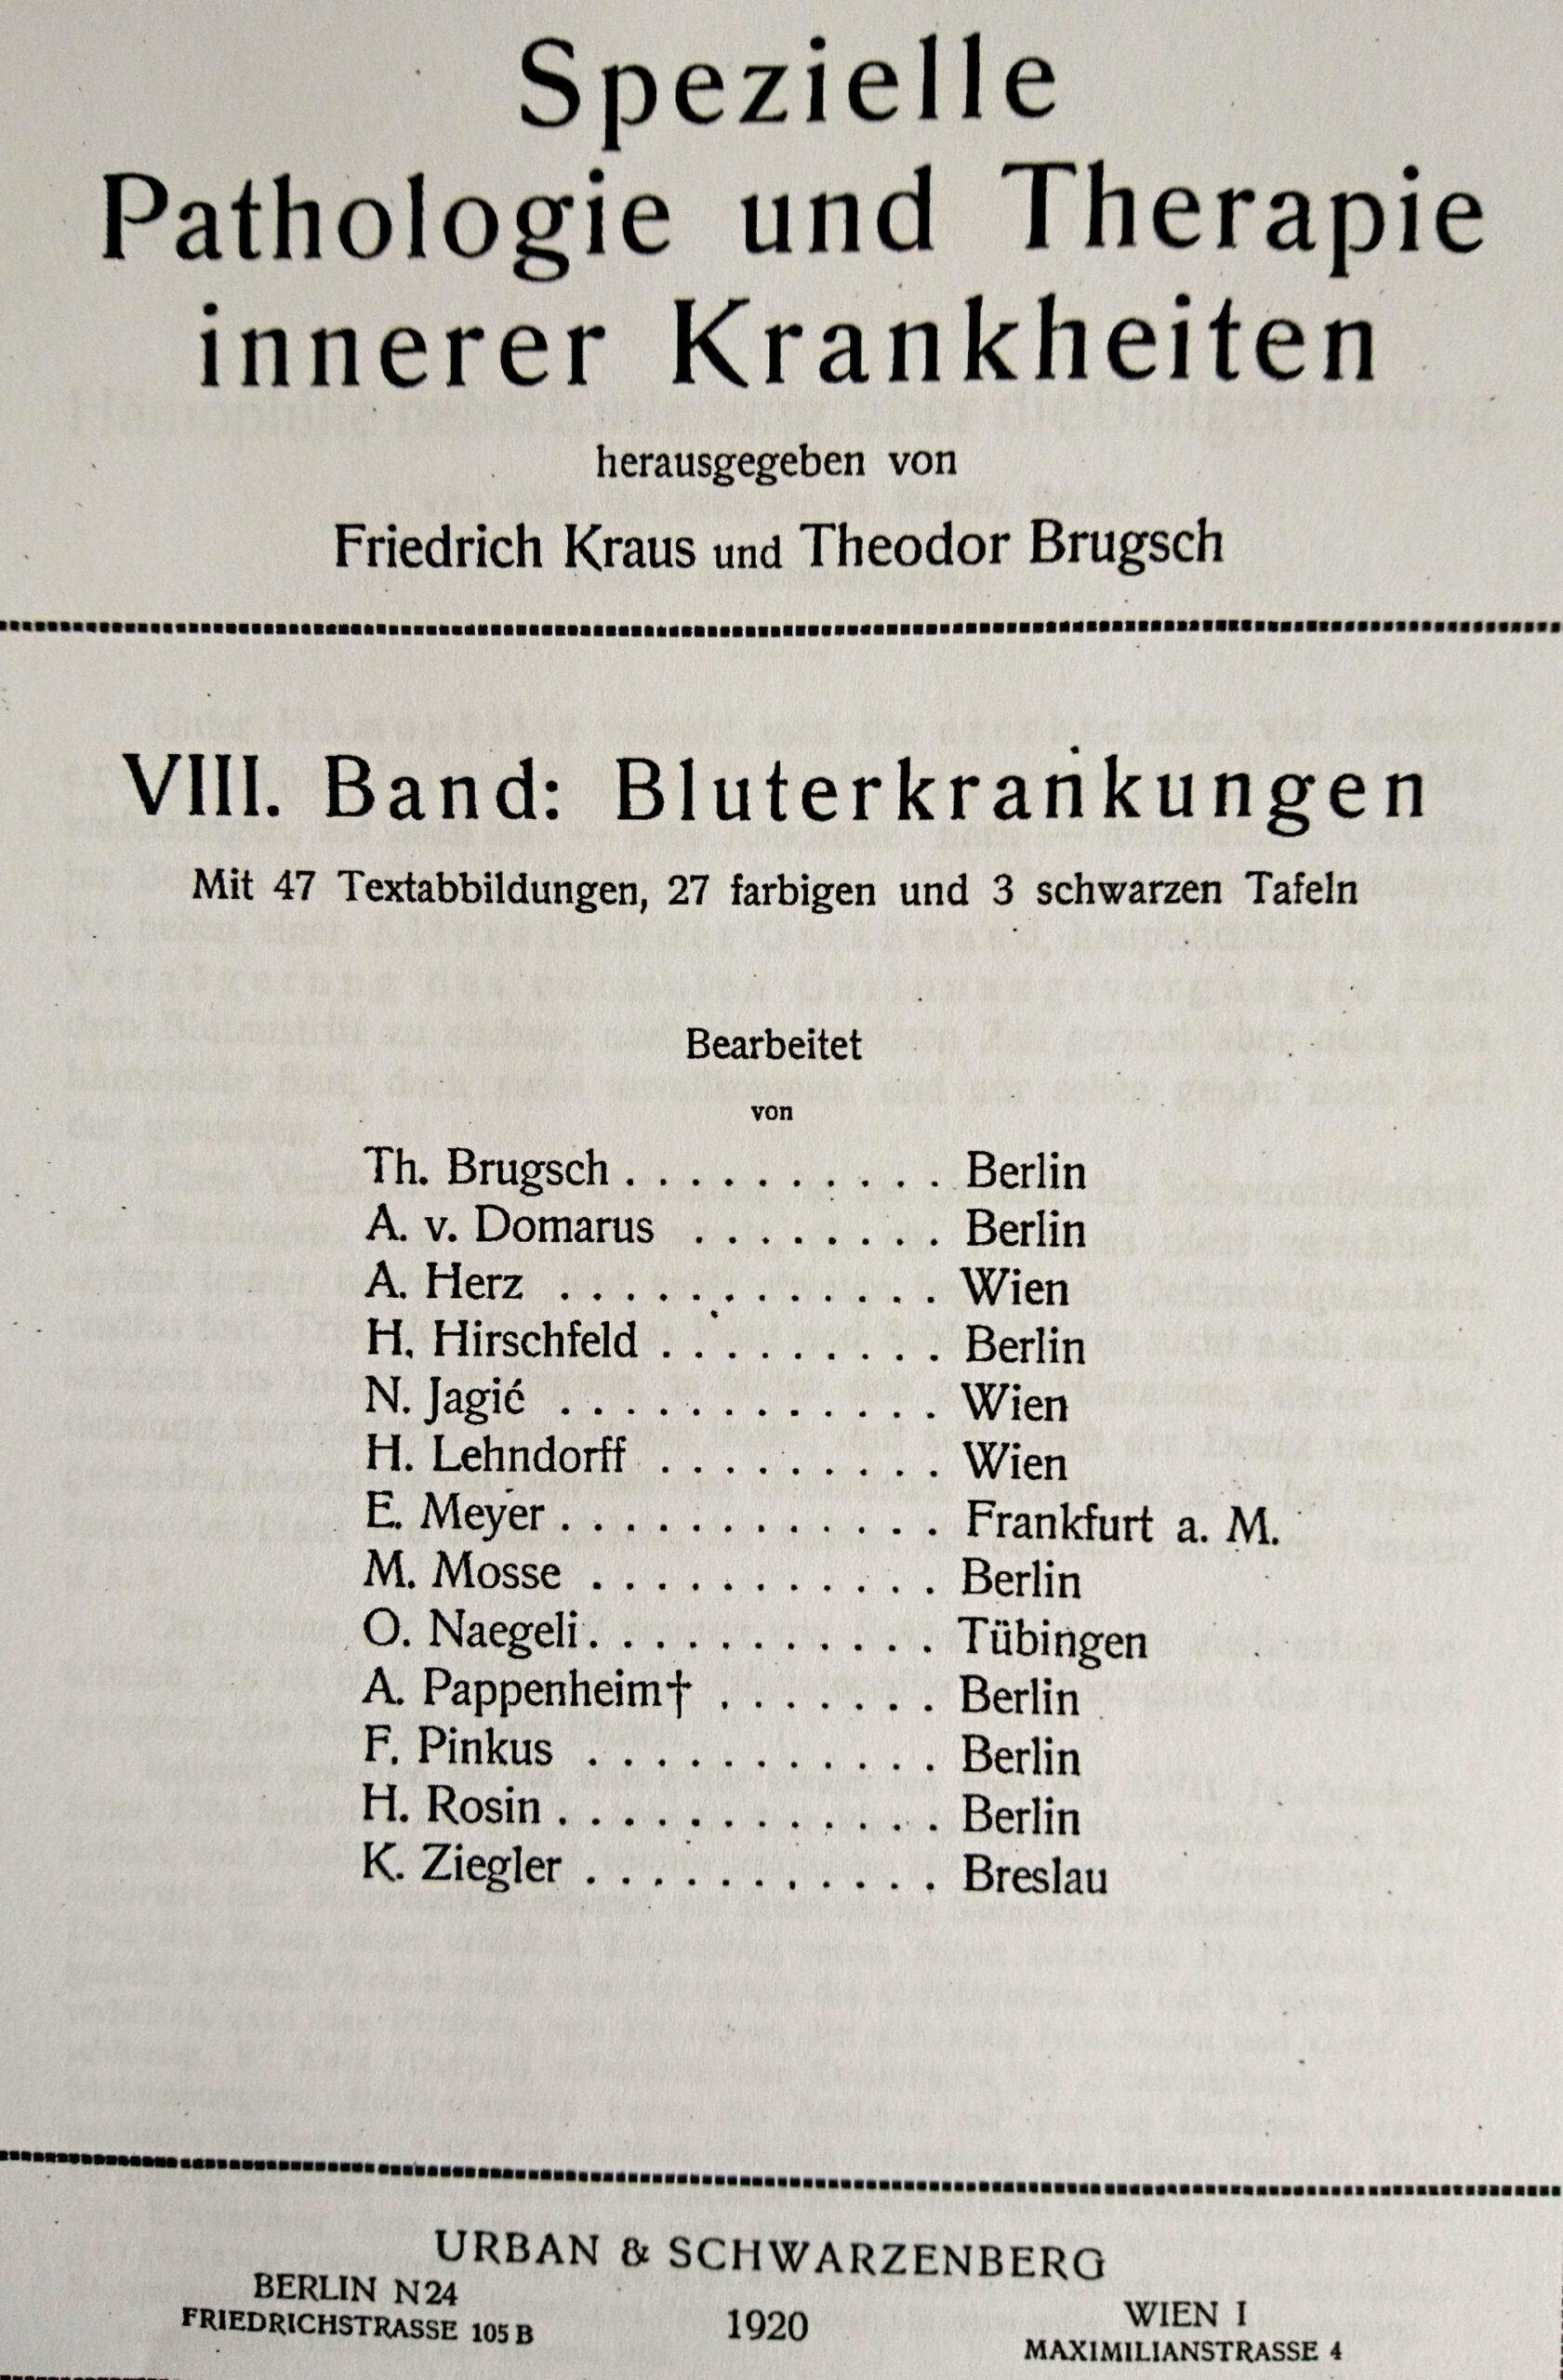 H. Rosin, Beitrag in Band 8, Spezielle Pathologie und Therapie Innerer Krankheiten, Hg. F. Kruas, Th. Brugsch, 1920
